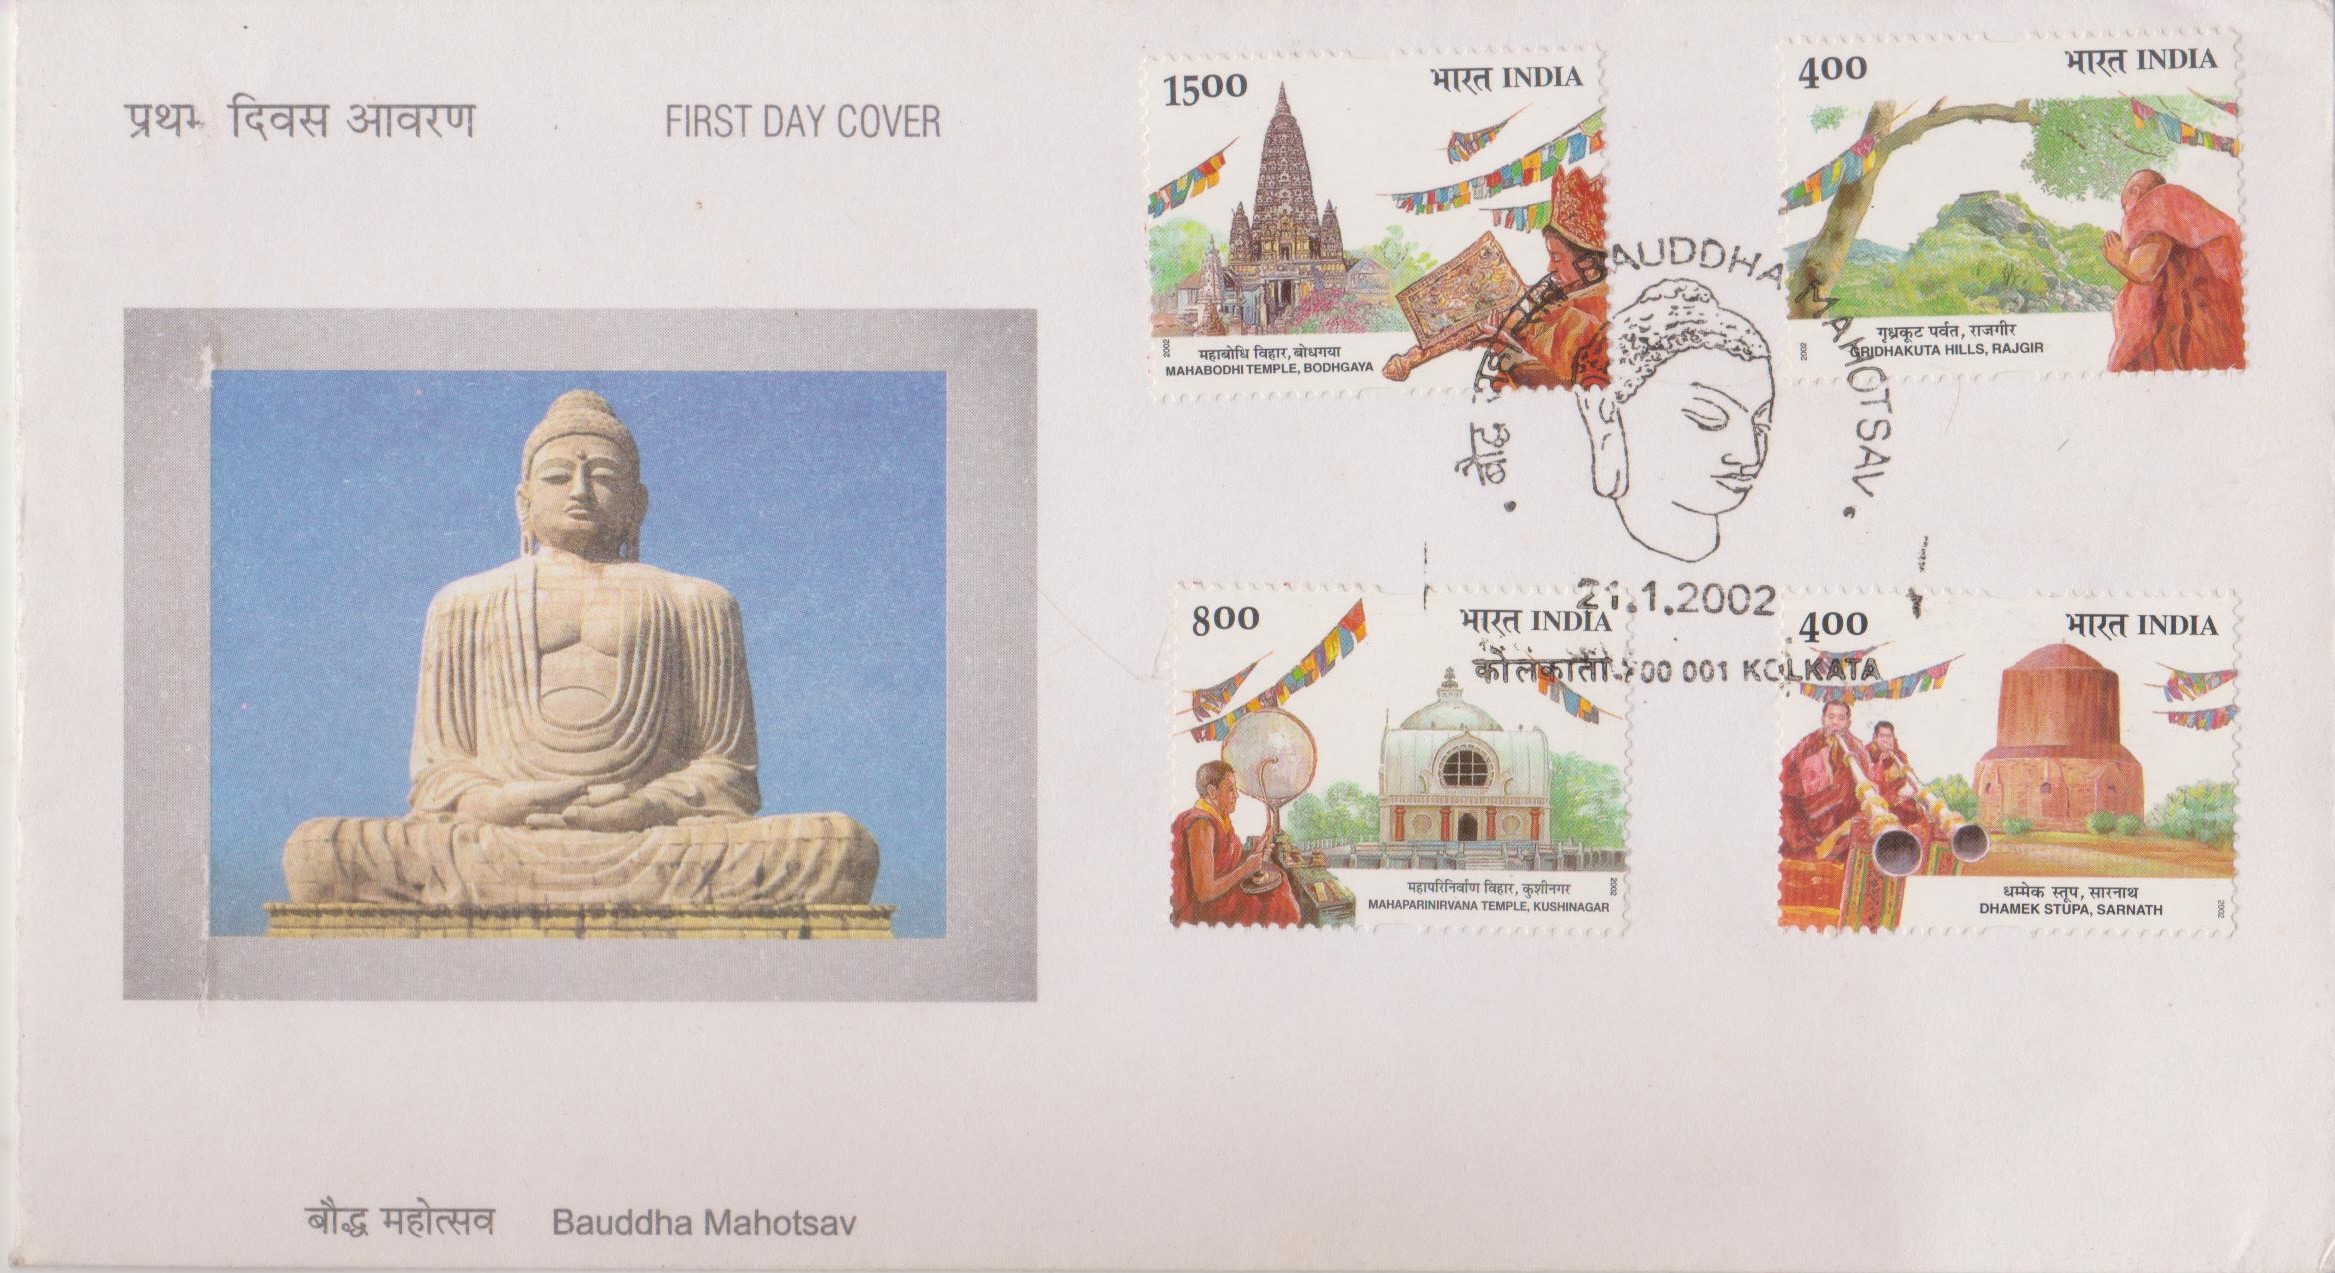 Mahabodhi temple (Bodhgaya); Vulture Peak (Rajgir); Dhamek Stupa (Sarnath); Mahaparinirvana temple (Kushinagar)